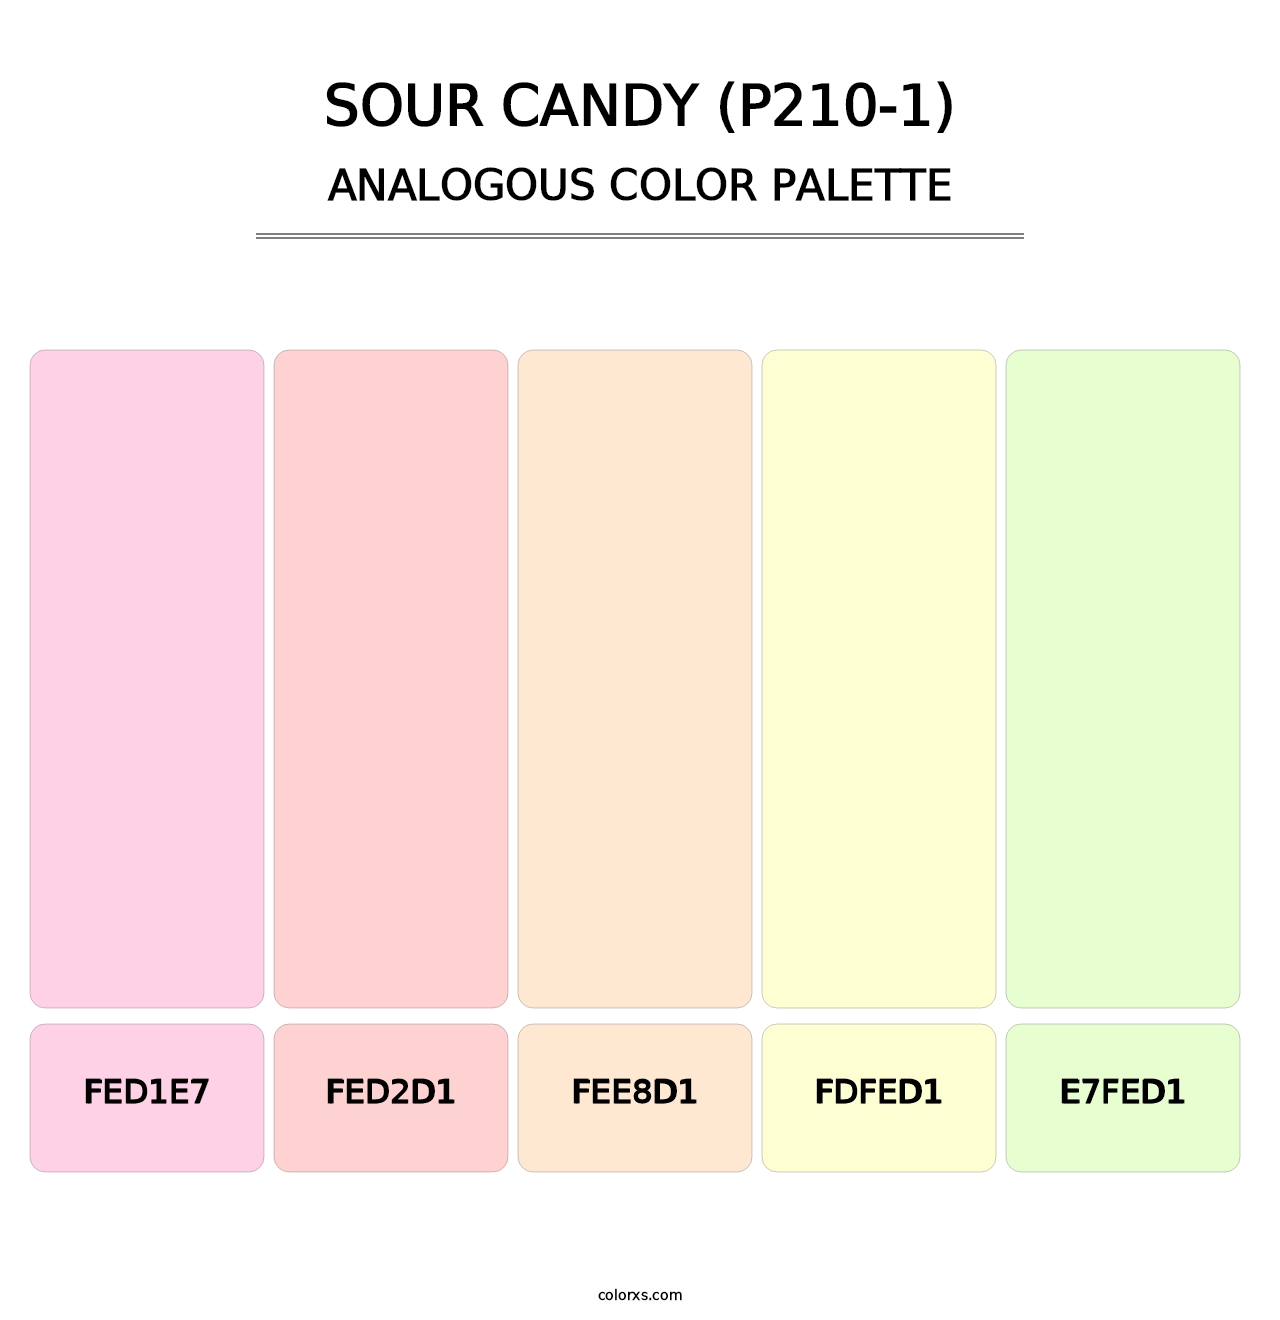 Sour Candy (P210-1) - Analogous Color Palette